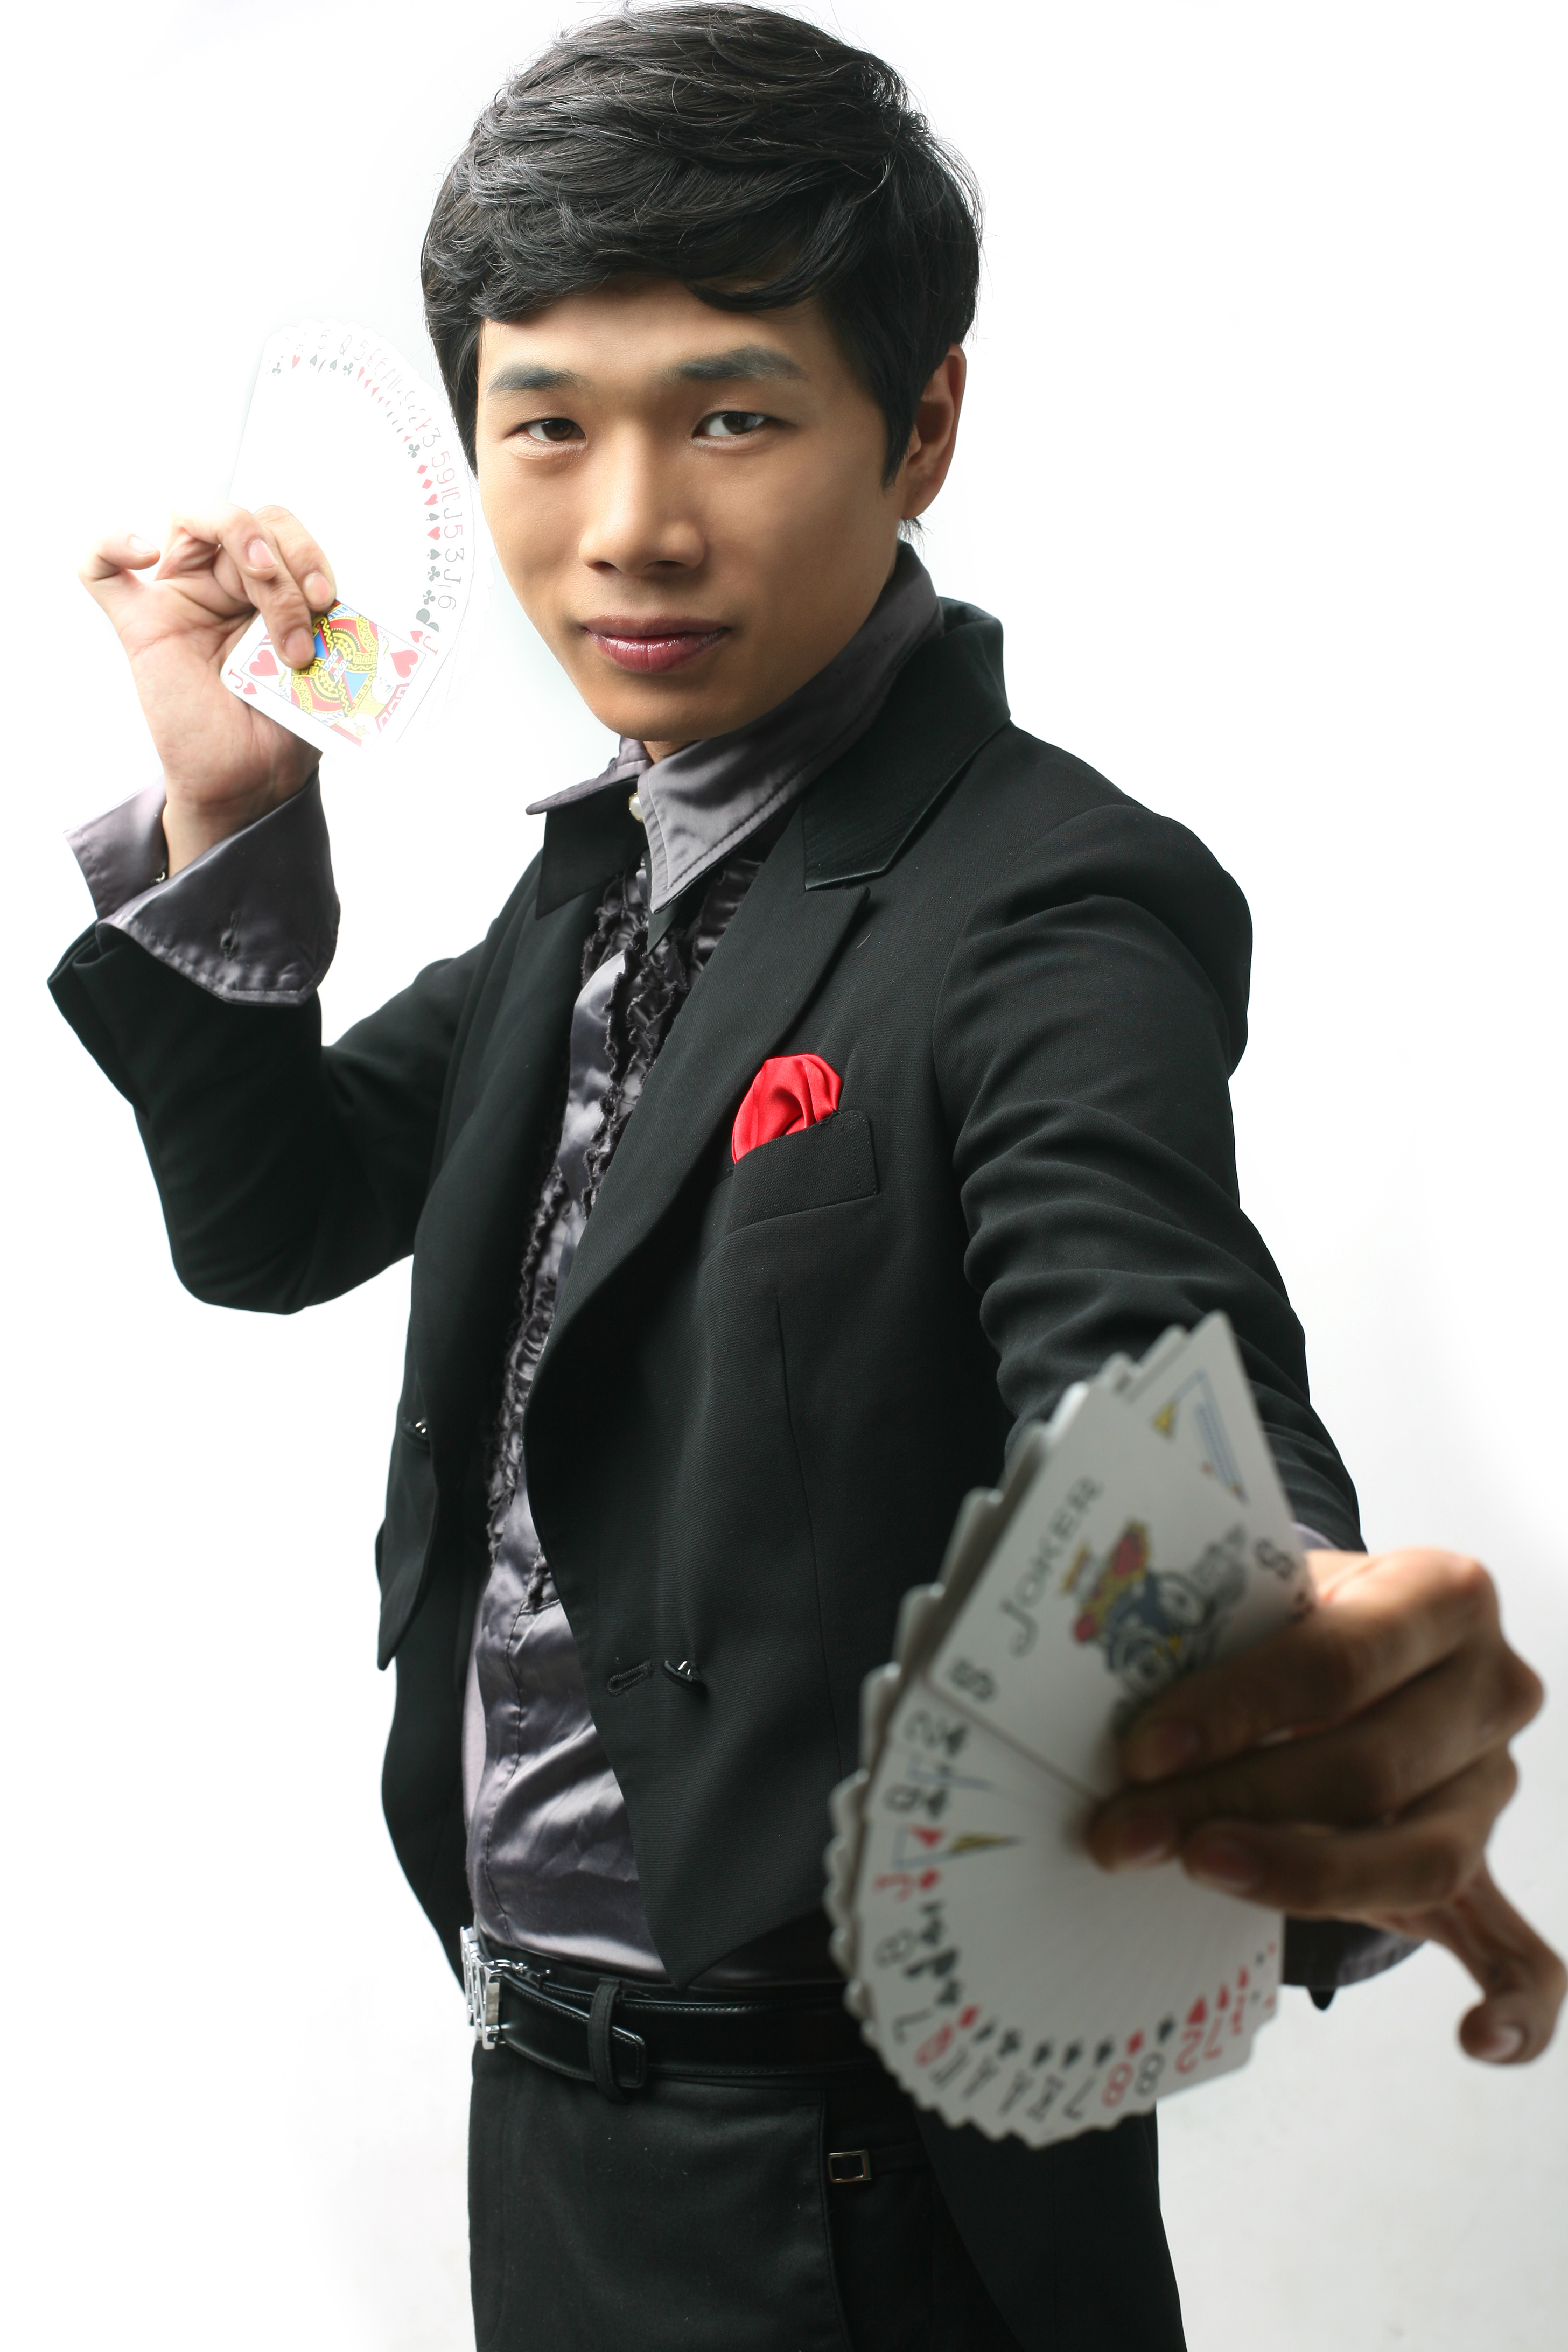 Magician Kim Young-Jin